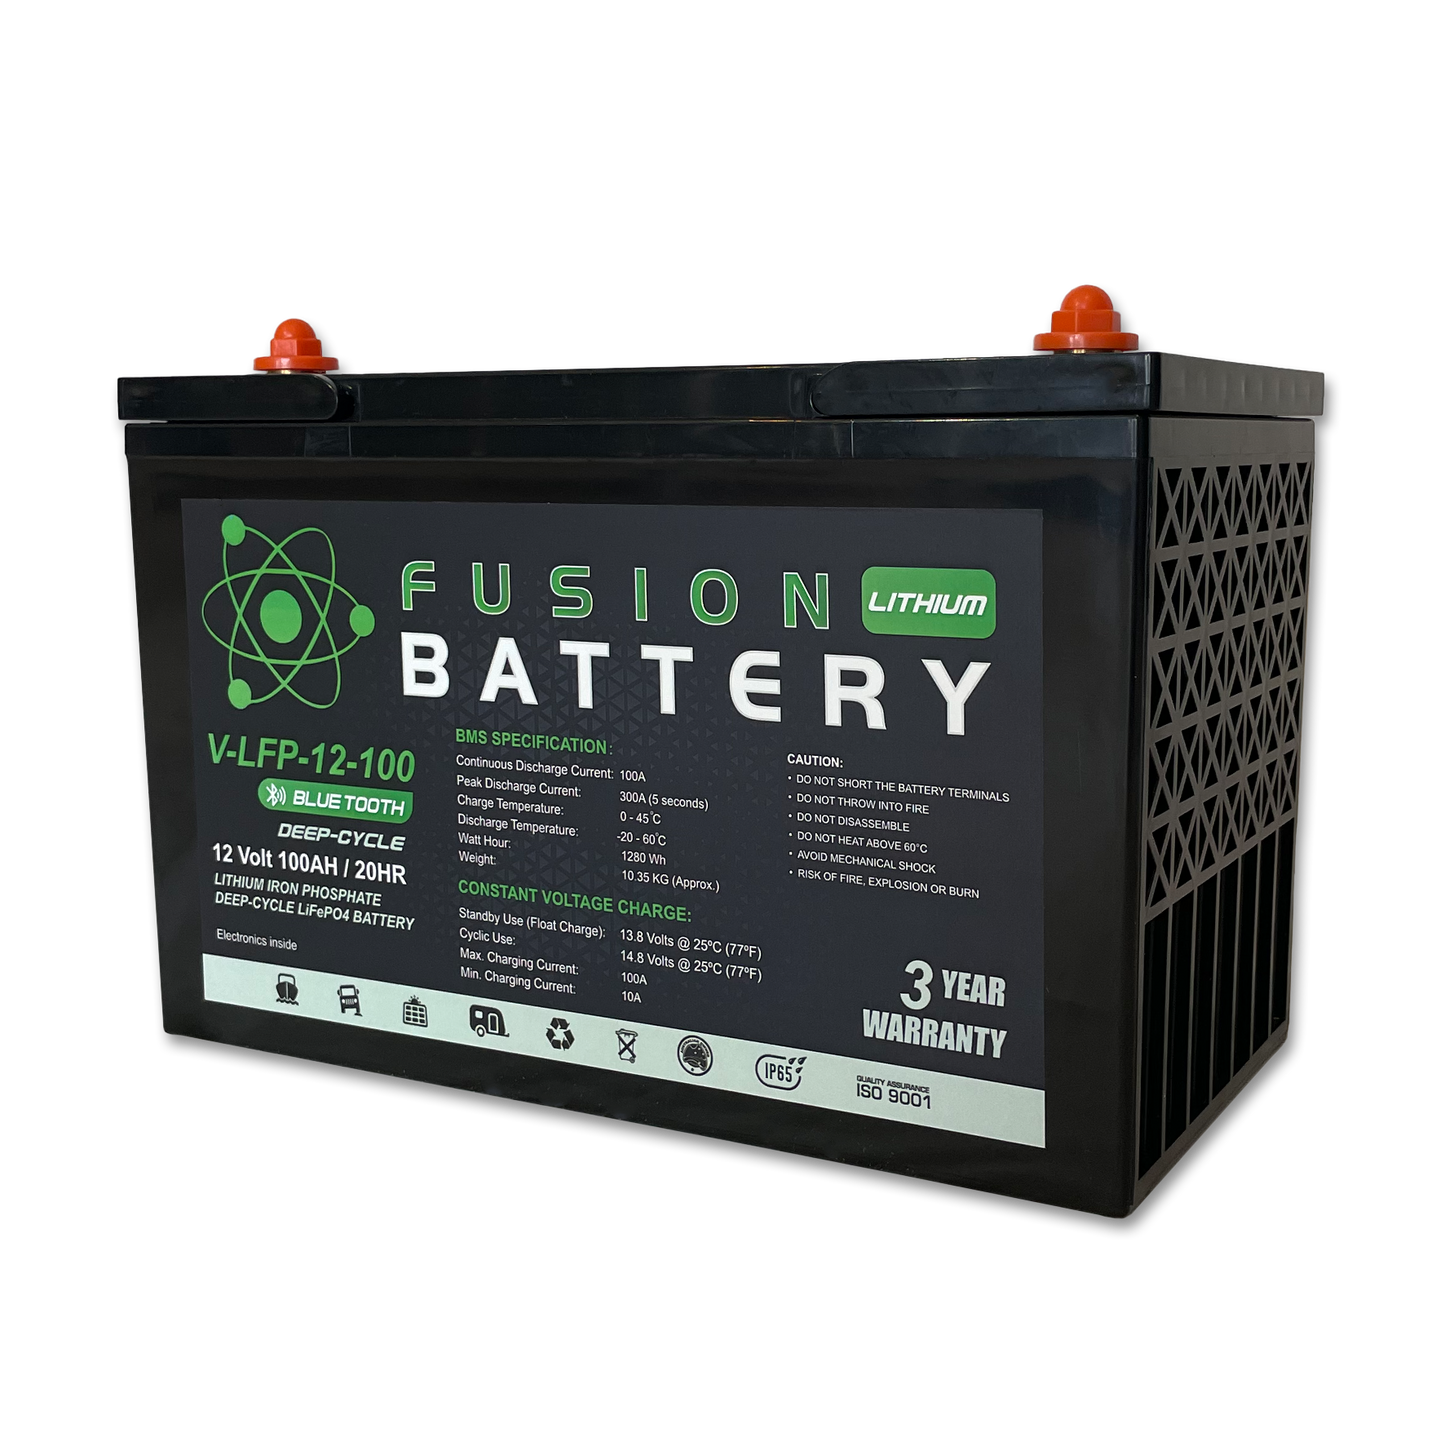 Fusion V-LFP-12-100 Deep-Cycle 12v 100Ah Lithium Battery